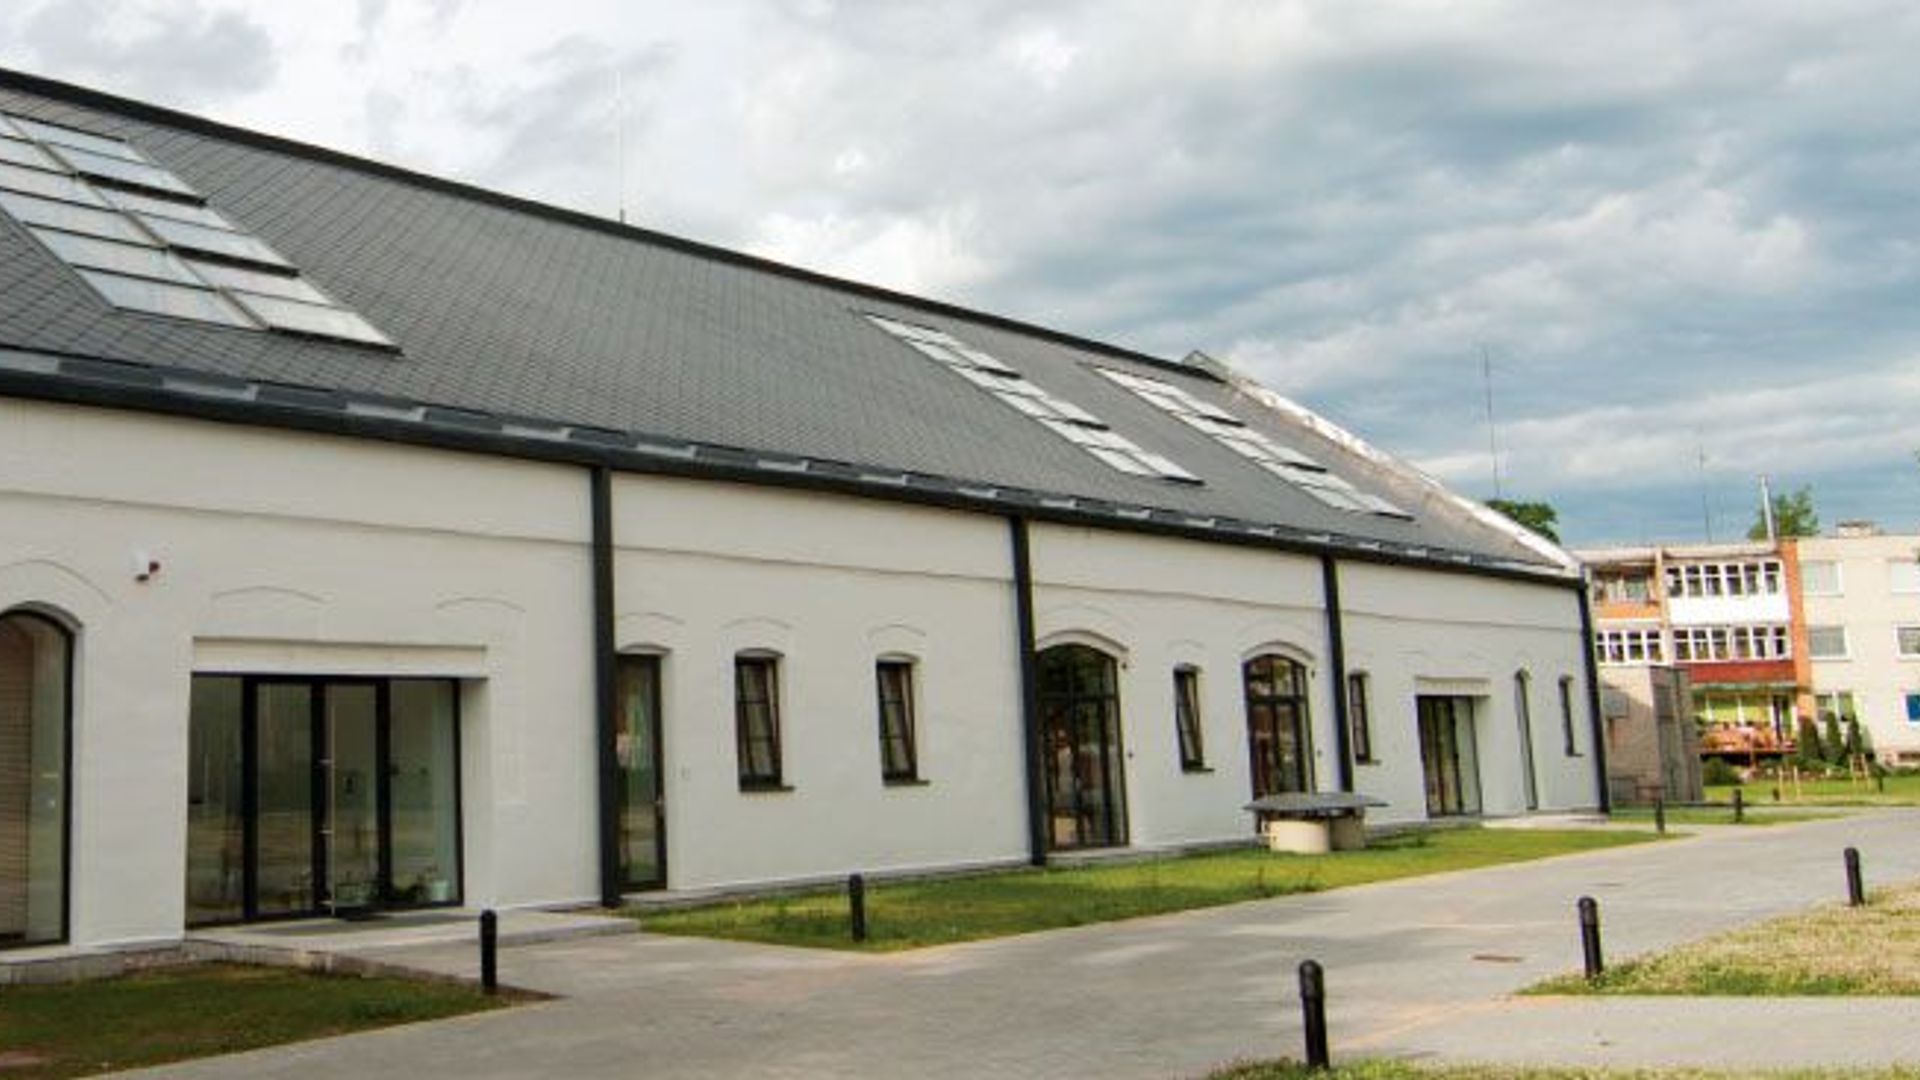 Rietavas Tourism and Business Information Center